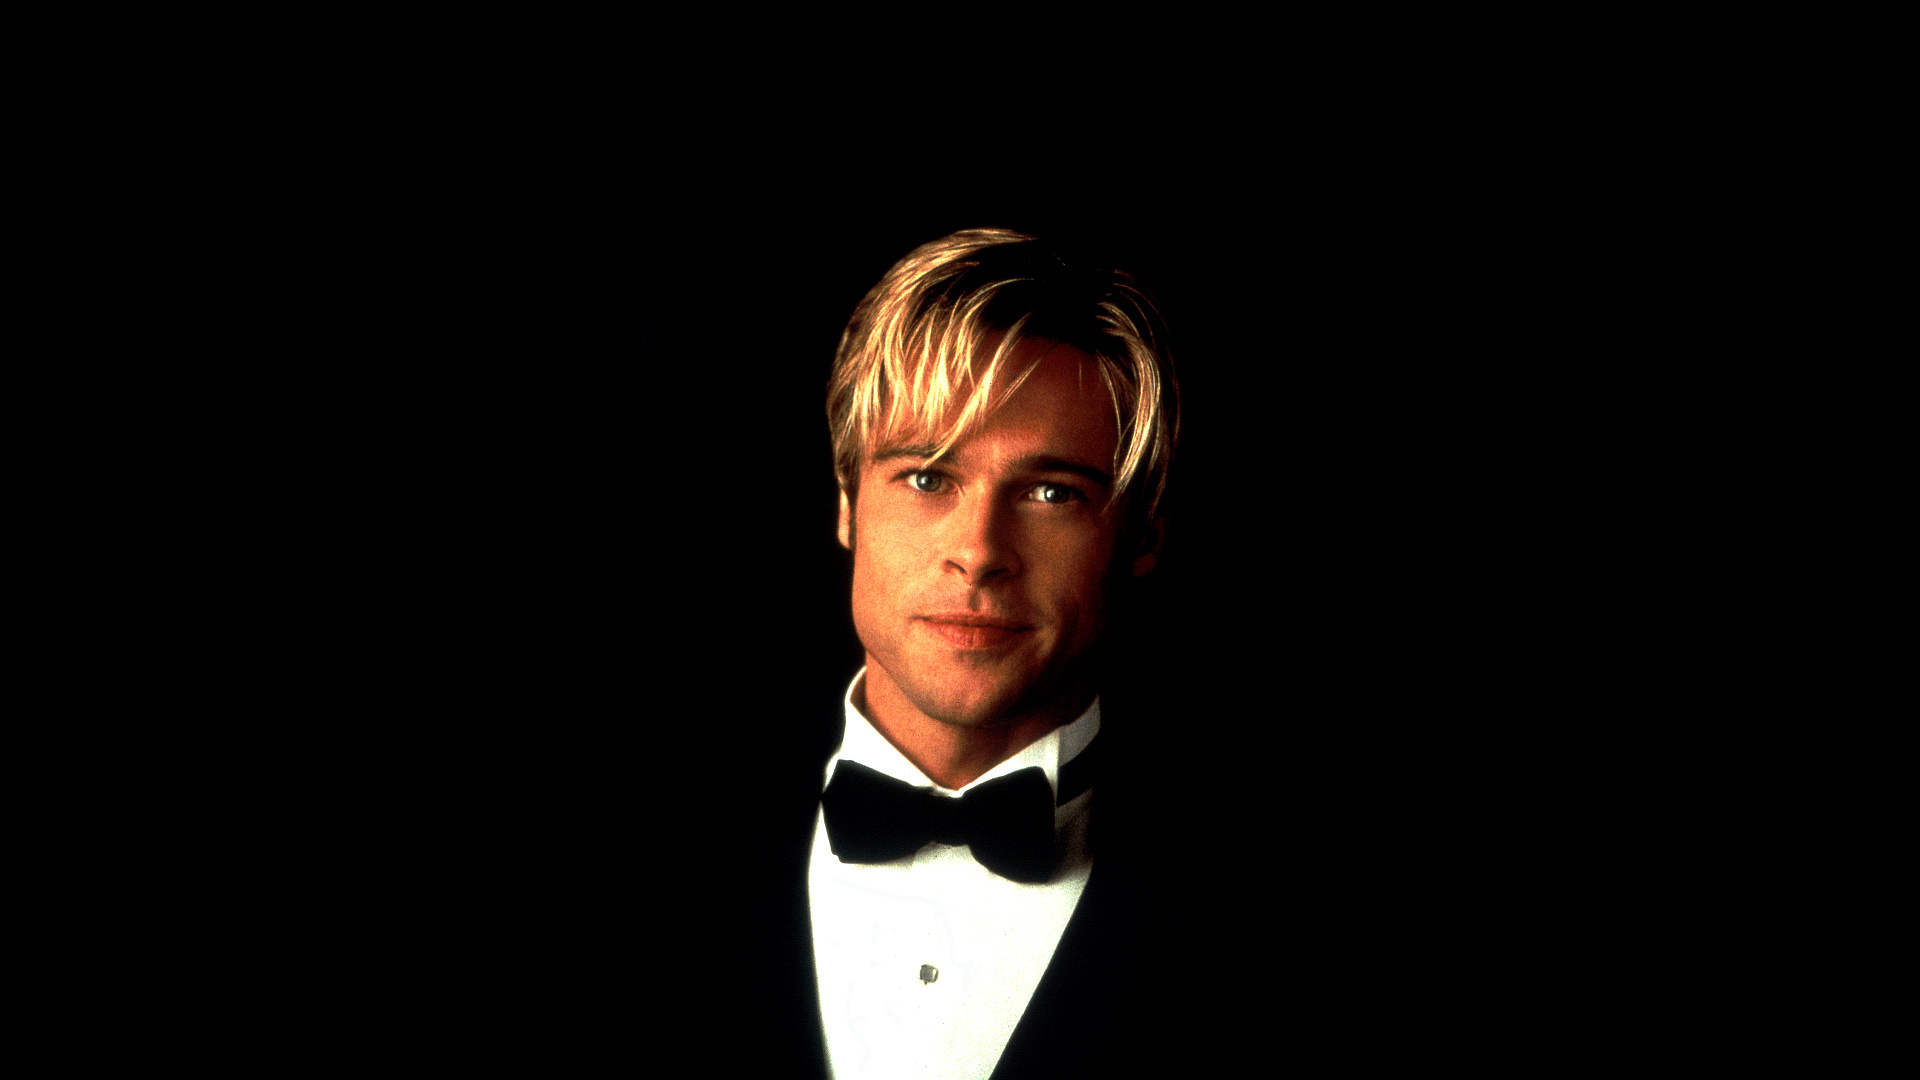 Brad Pitt: Known for roles in the "Ocean's" franchise, "Twelve Monkeys". 1920x1080 Full HD Background.